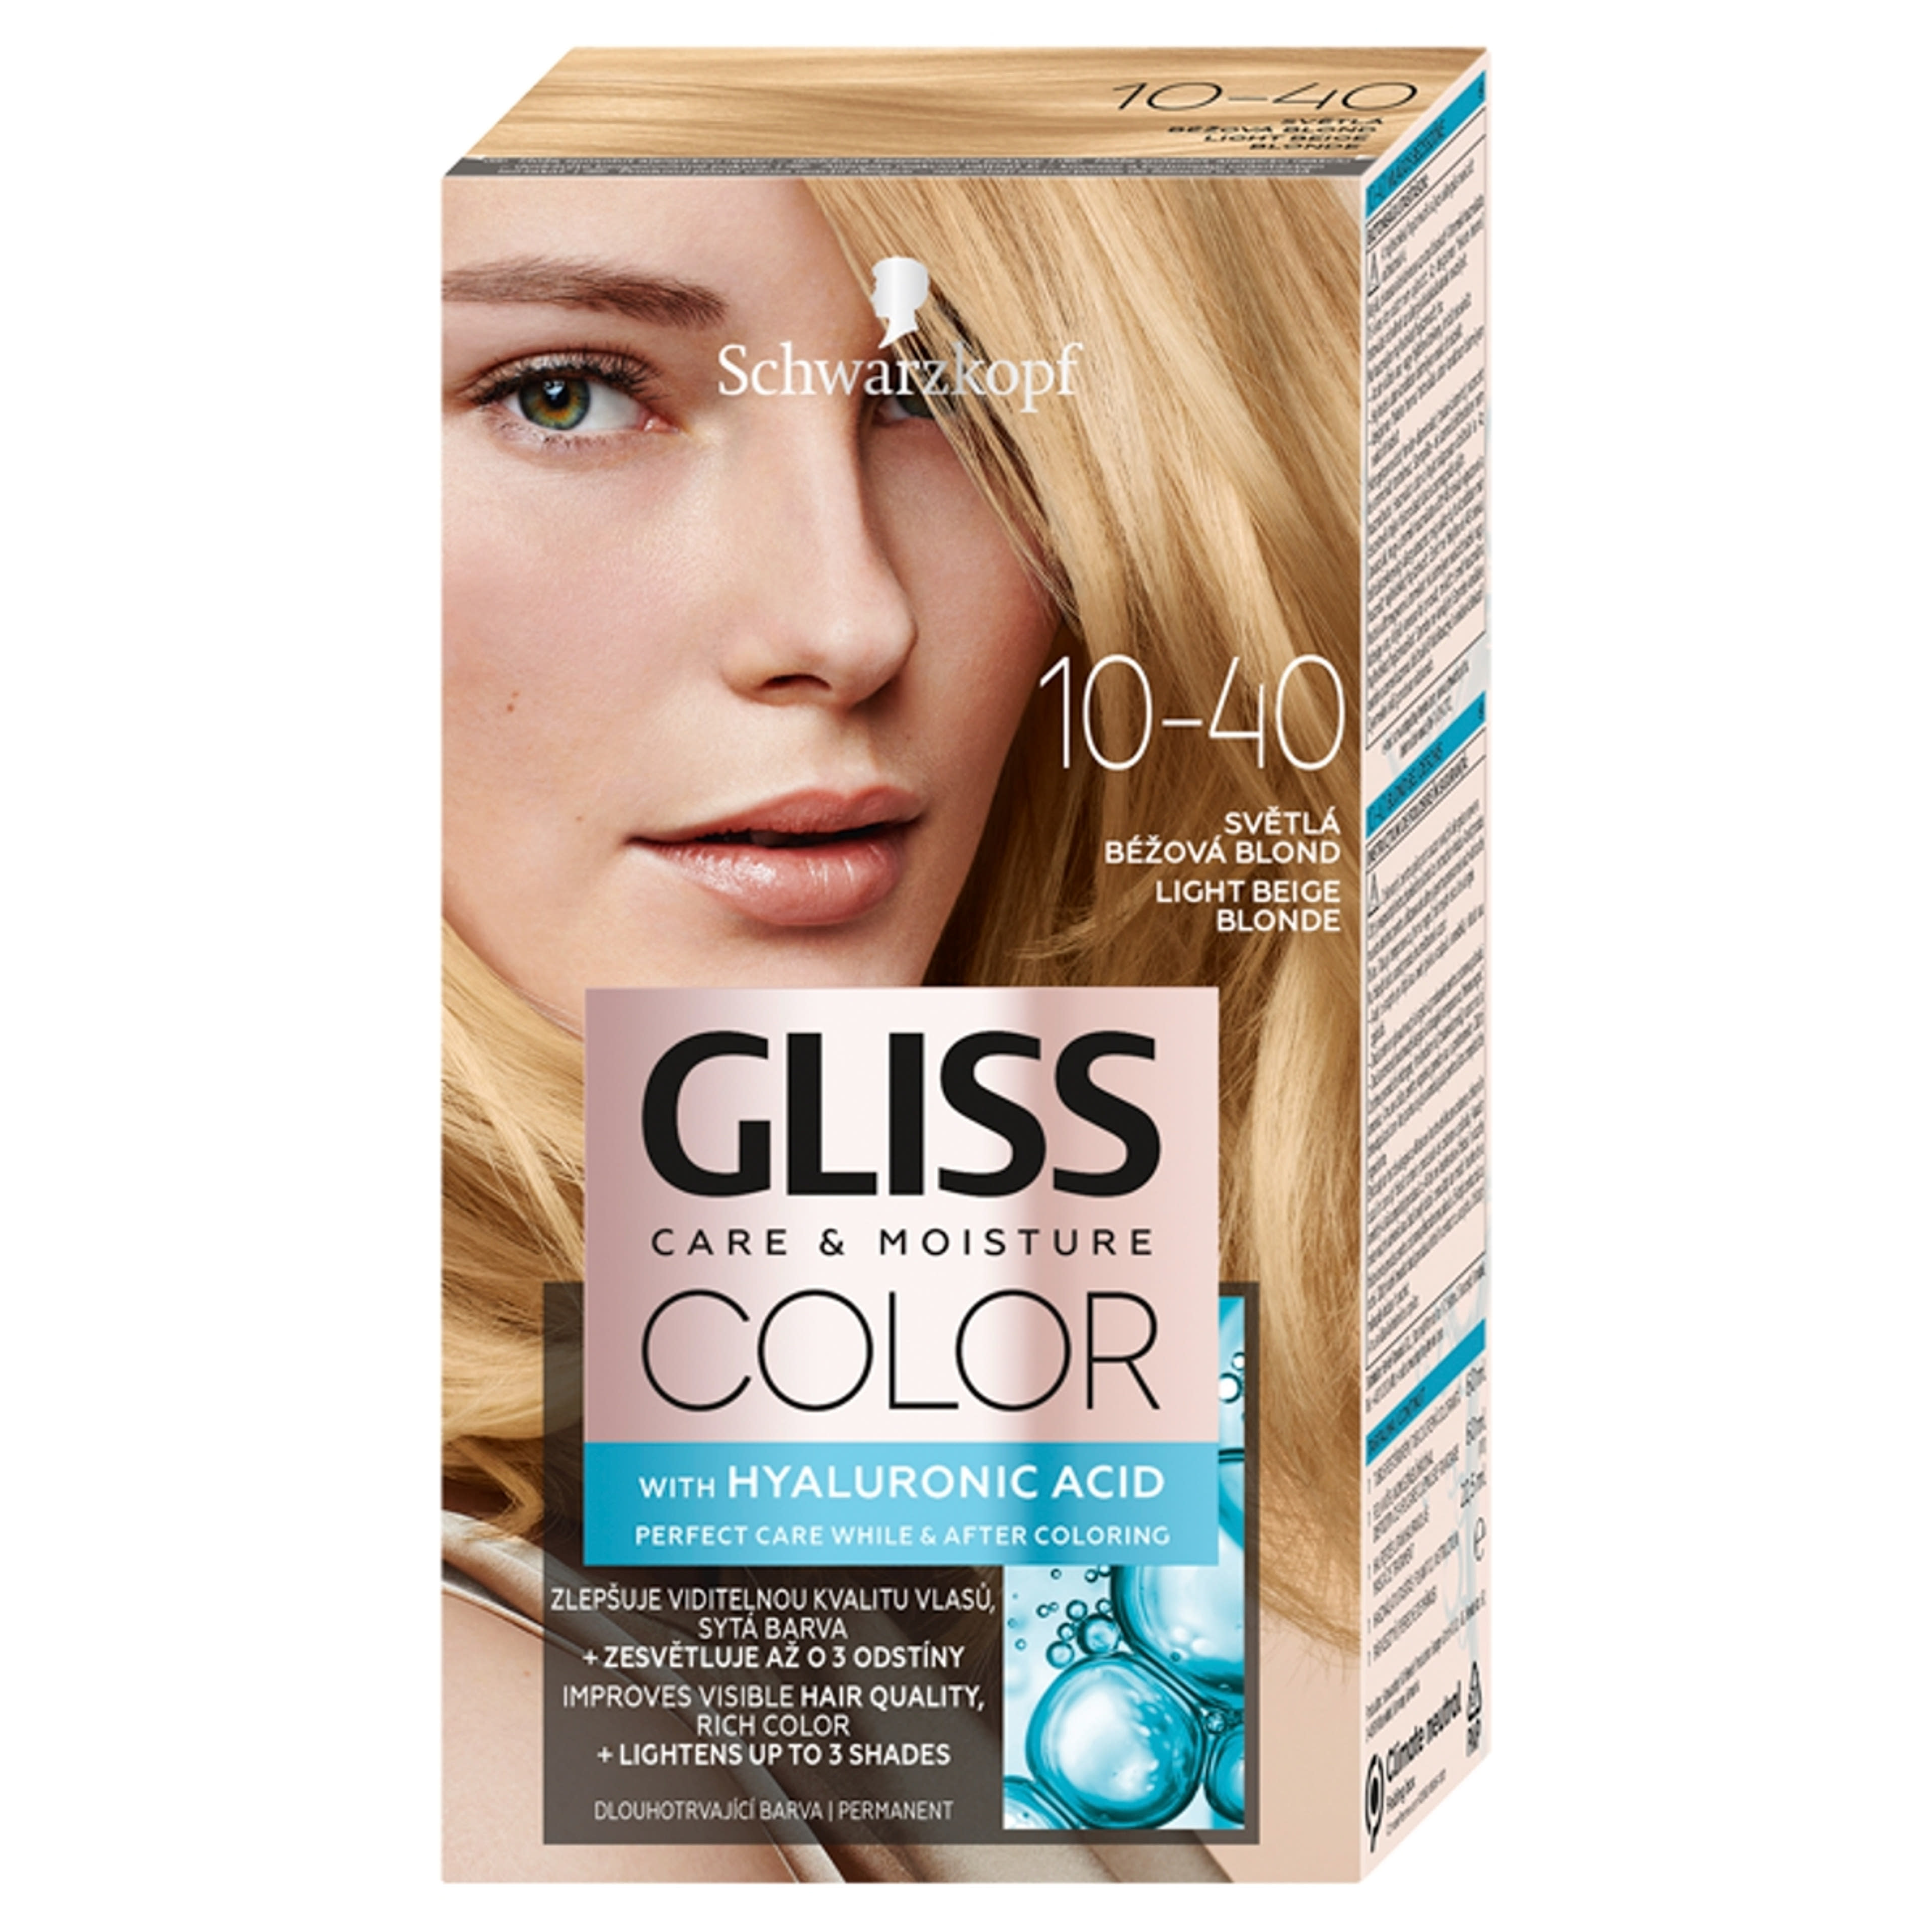 Gliss Color hajfesték, 10-40 világos bézsszőke - 1 db